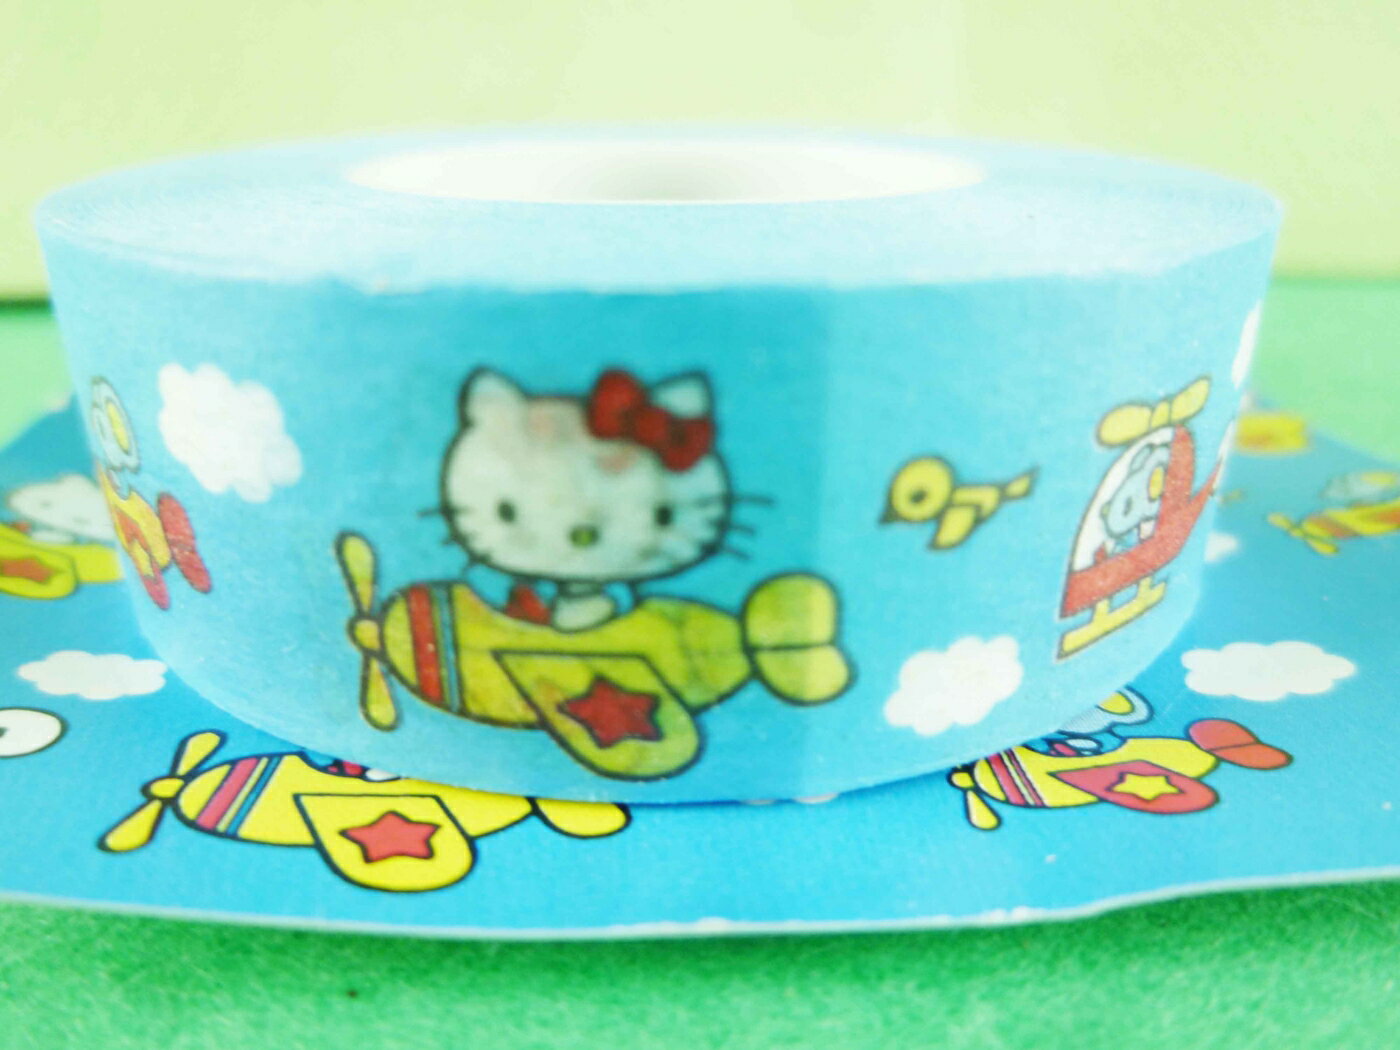 【震撼精品百貨】Hello Kitty 凱蒂貓 紙膠帶-藍飛機圖案 震撼日式精品百貨